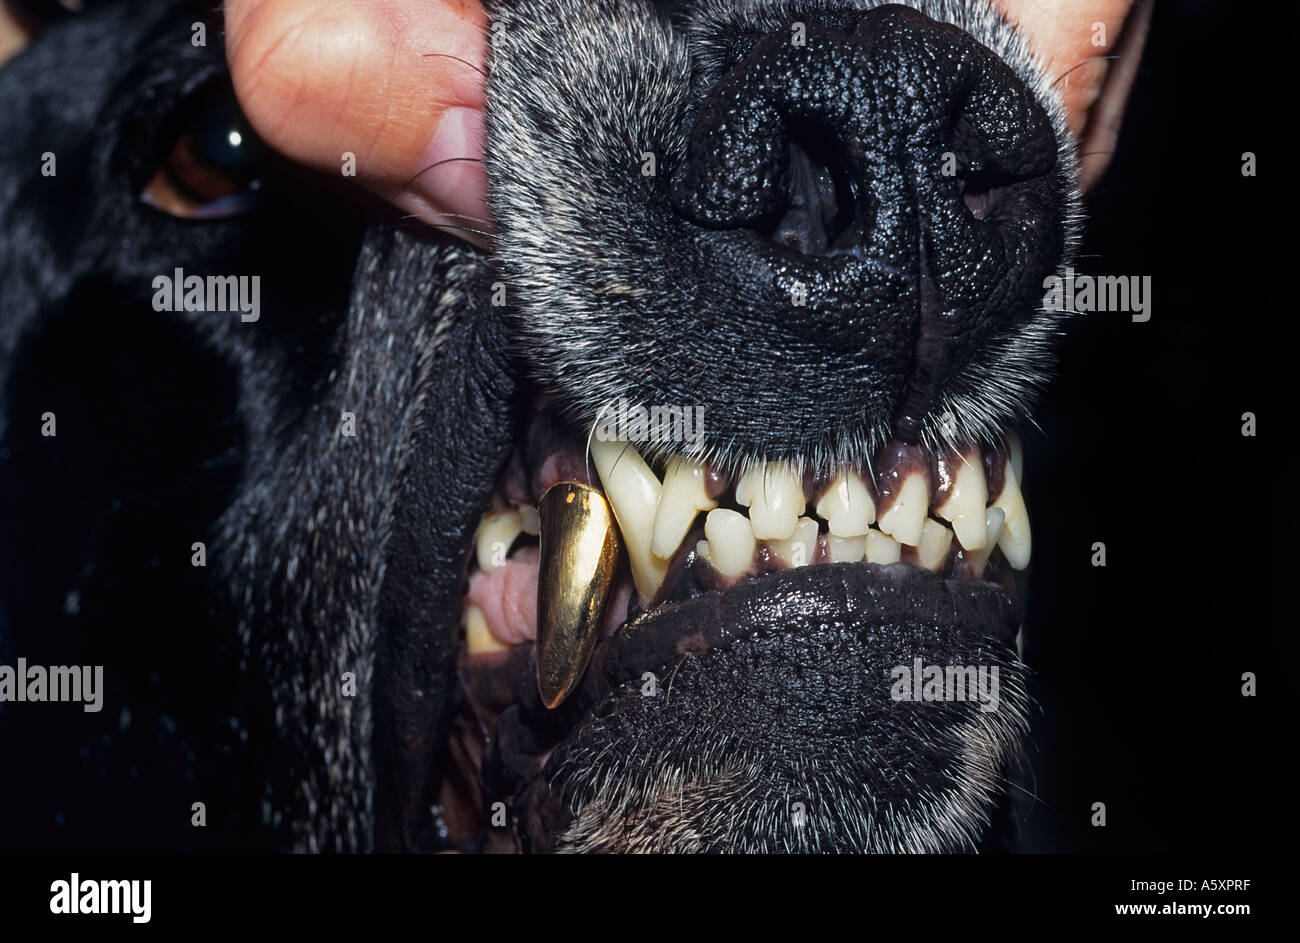 A de luxe canine. Prosthesis on a gun dog (Canis familiaris). Luxe canin. Prothèse dentaire sur un chien de chasse. Stock Photo